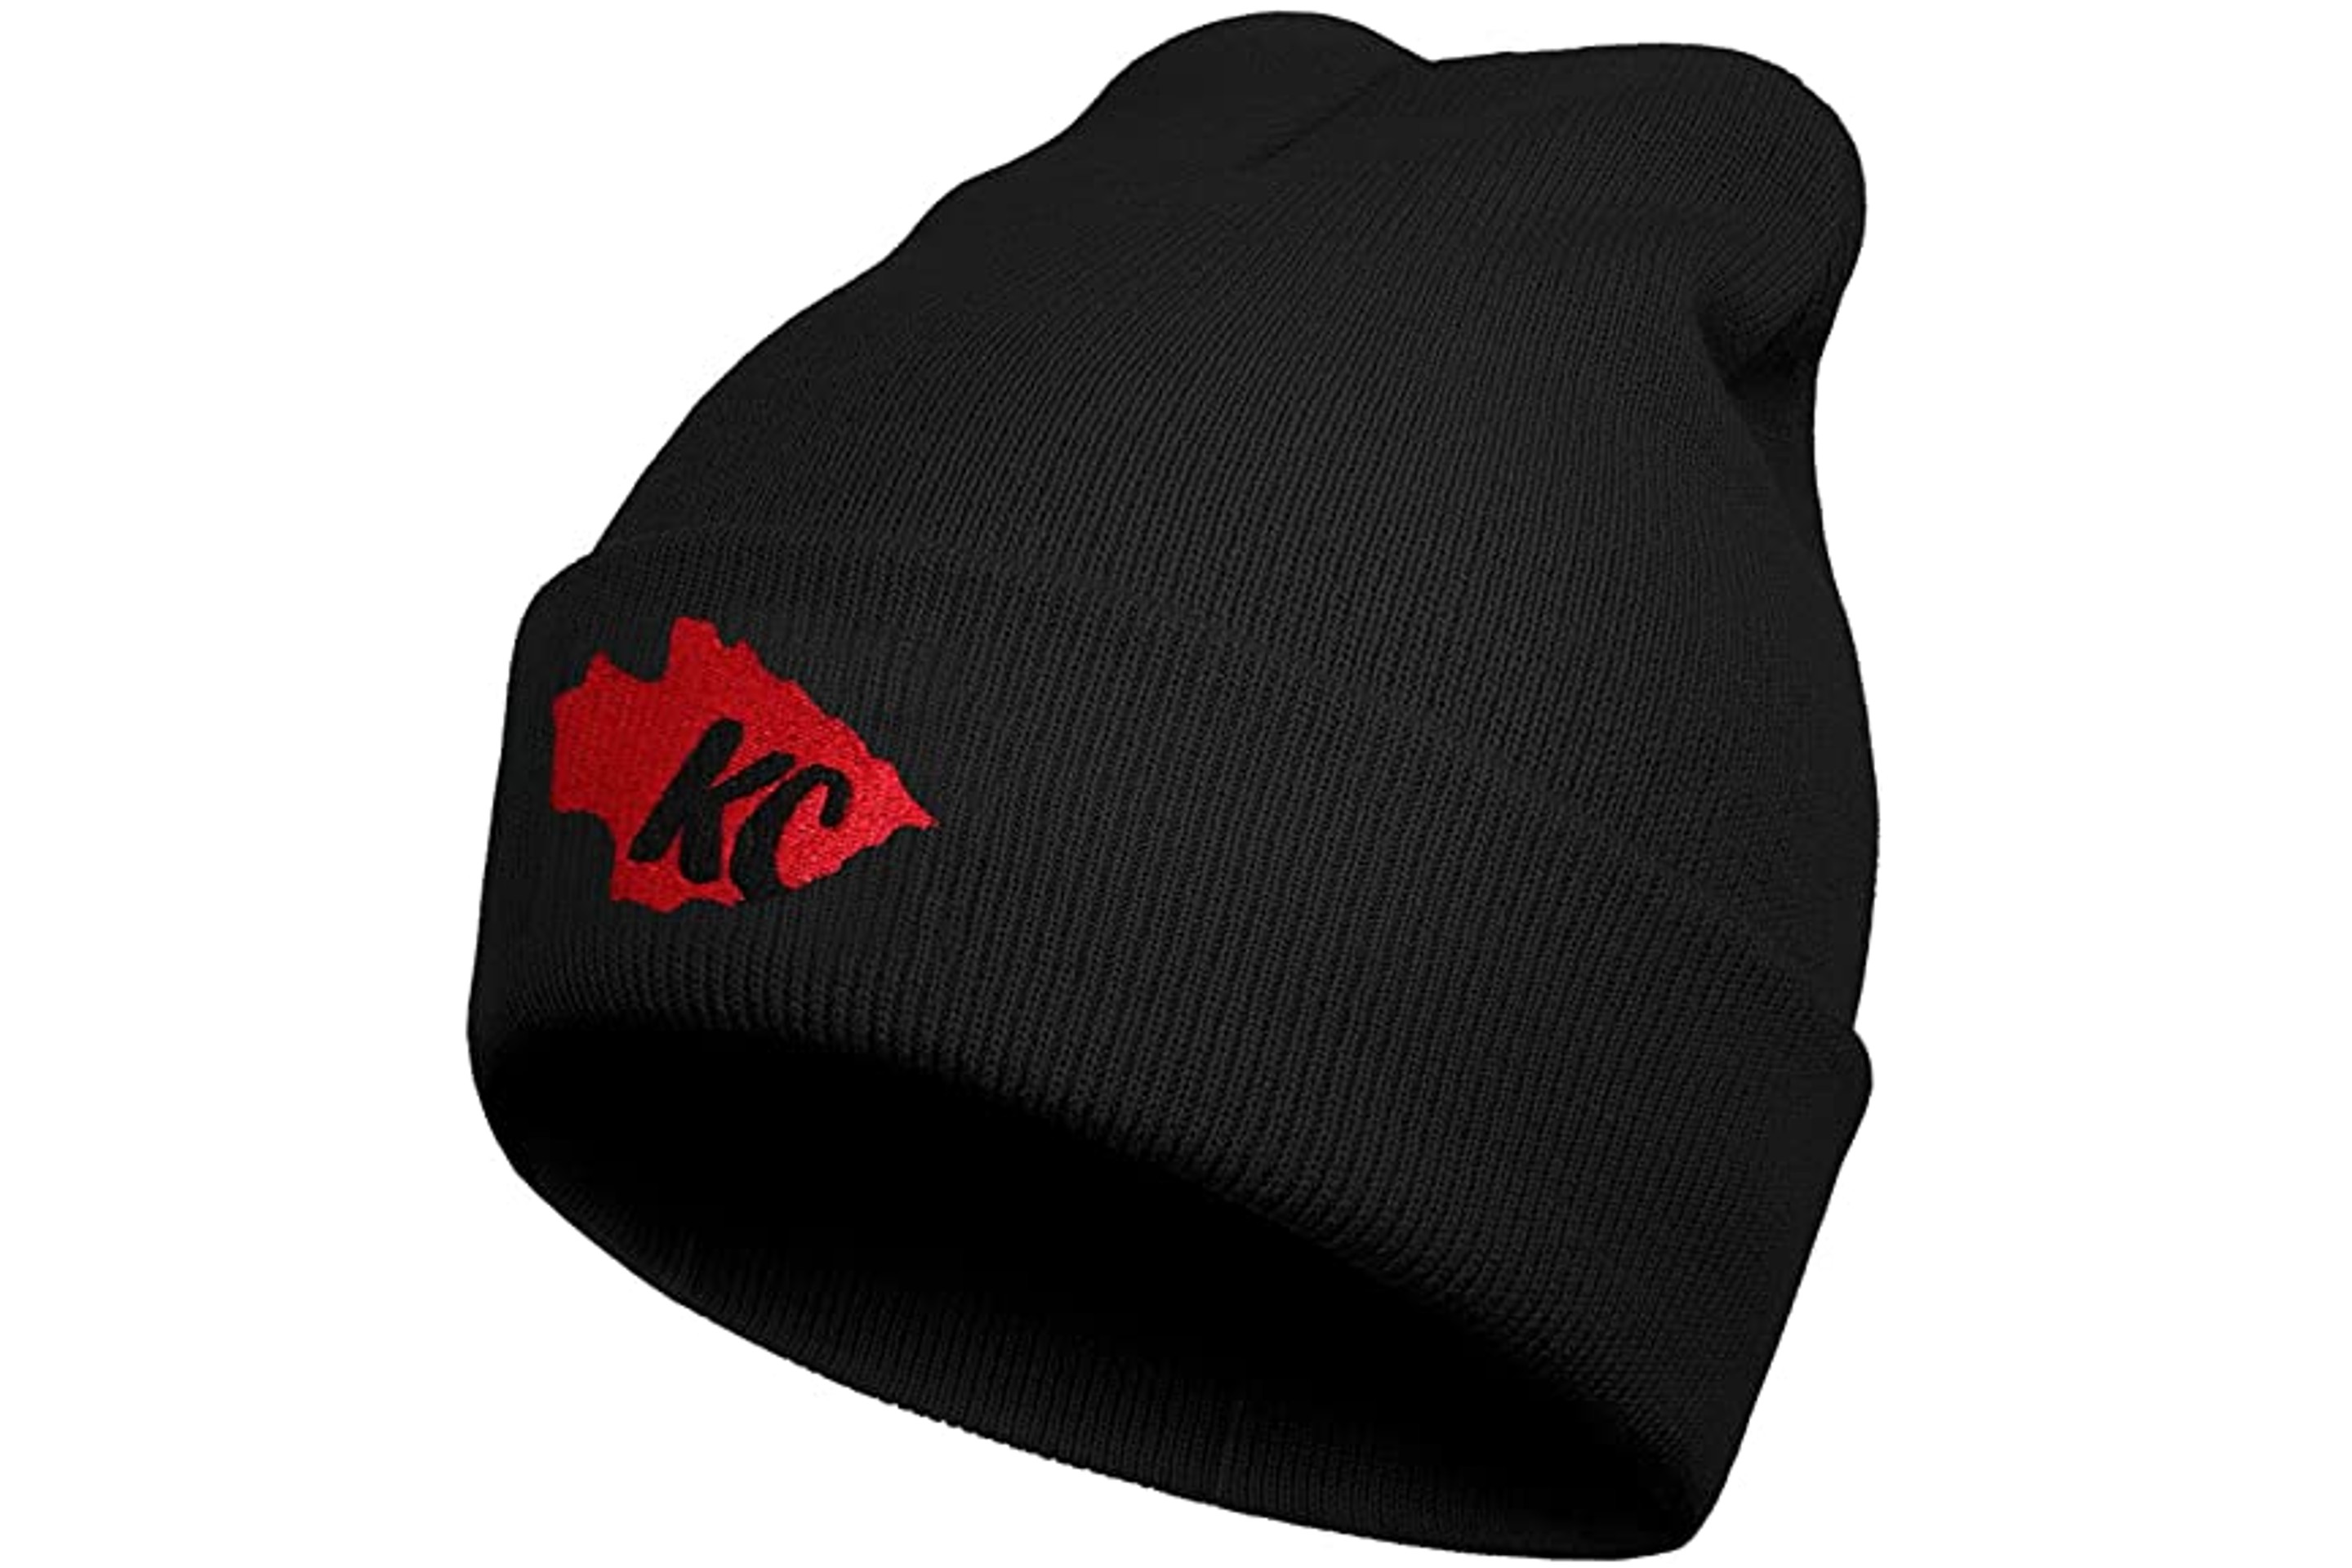 Football Fan Knit Beanie Hat for Men and Women